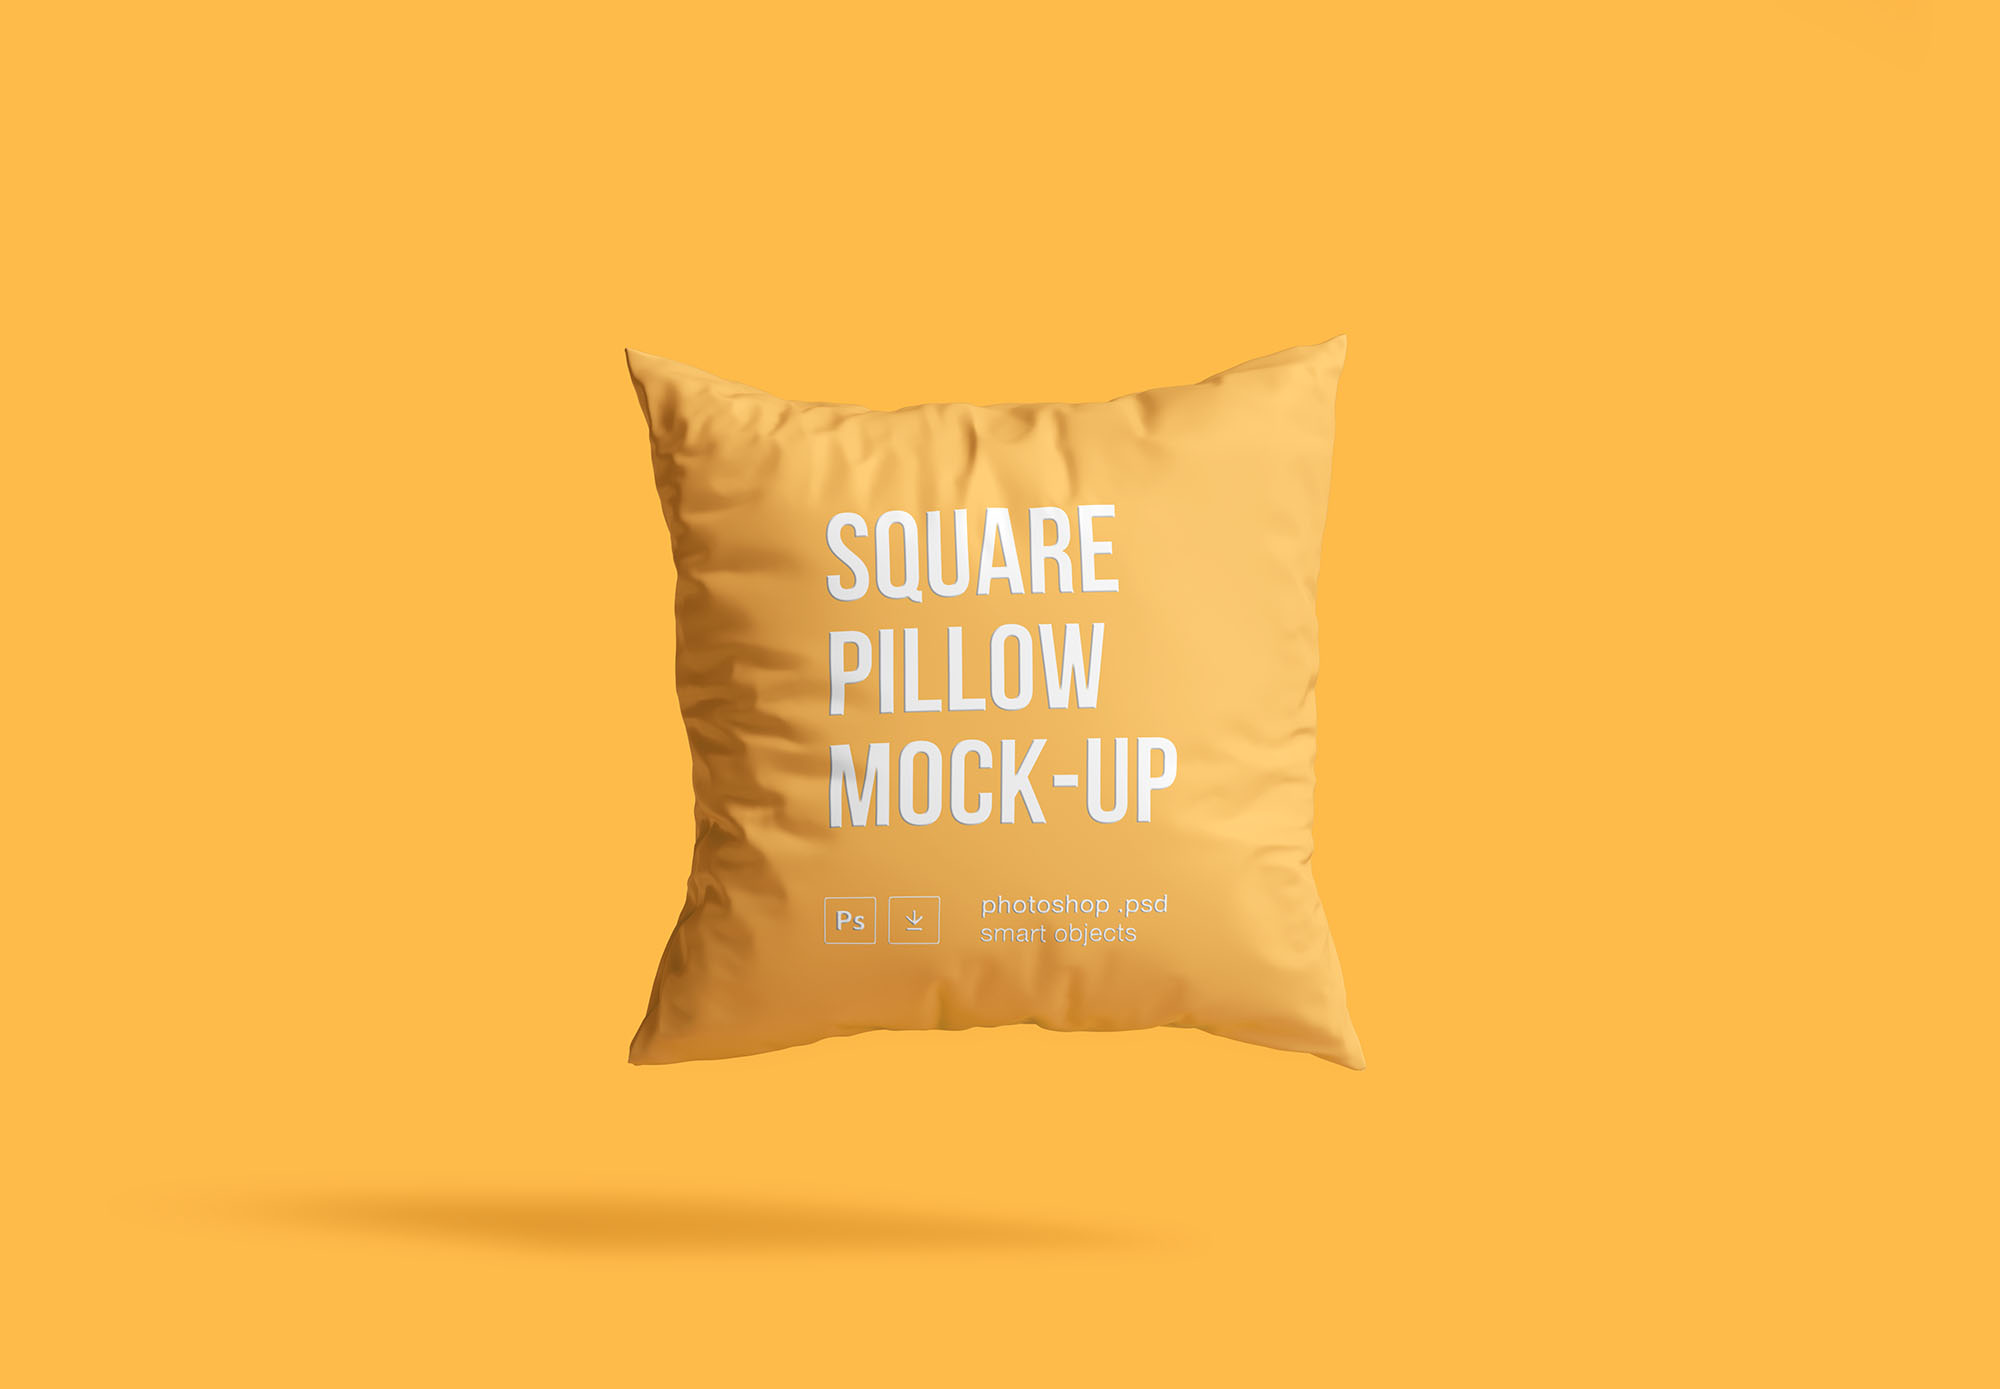 方形抱枕产品贴图展示模版 Square Pillow Moc